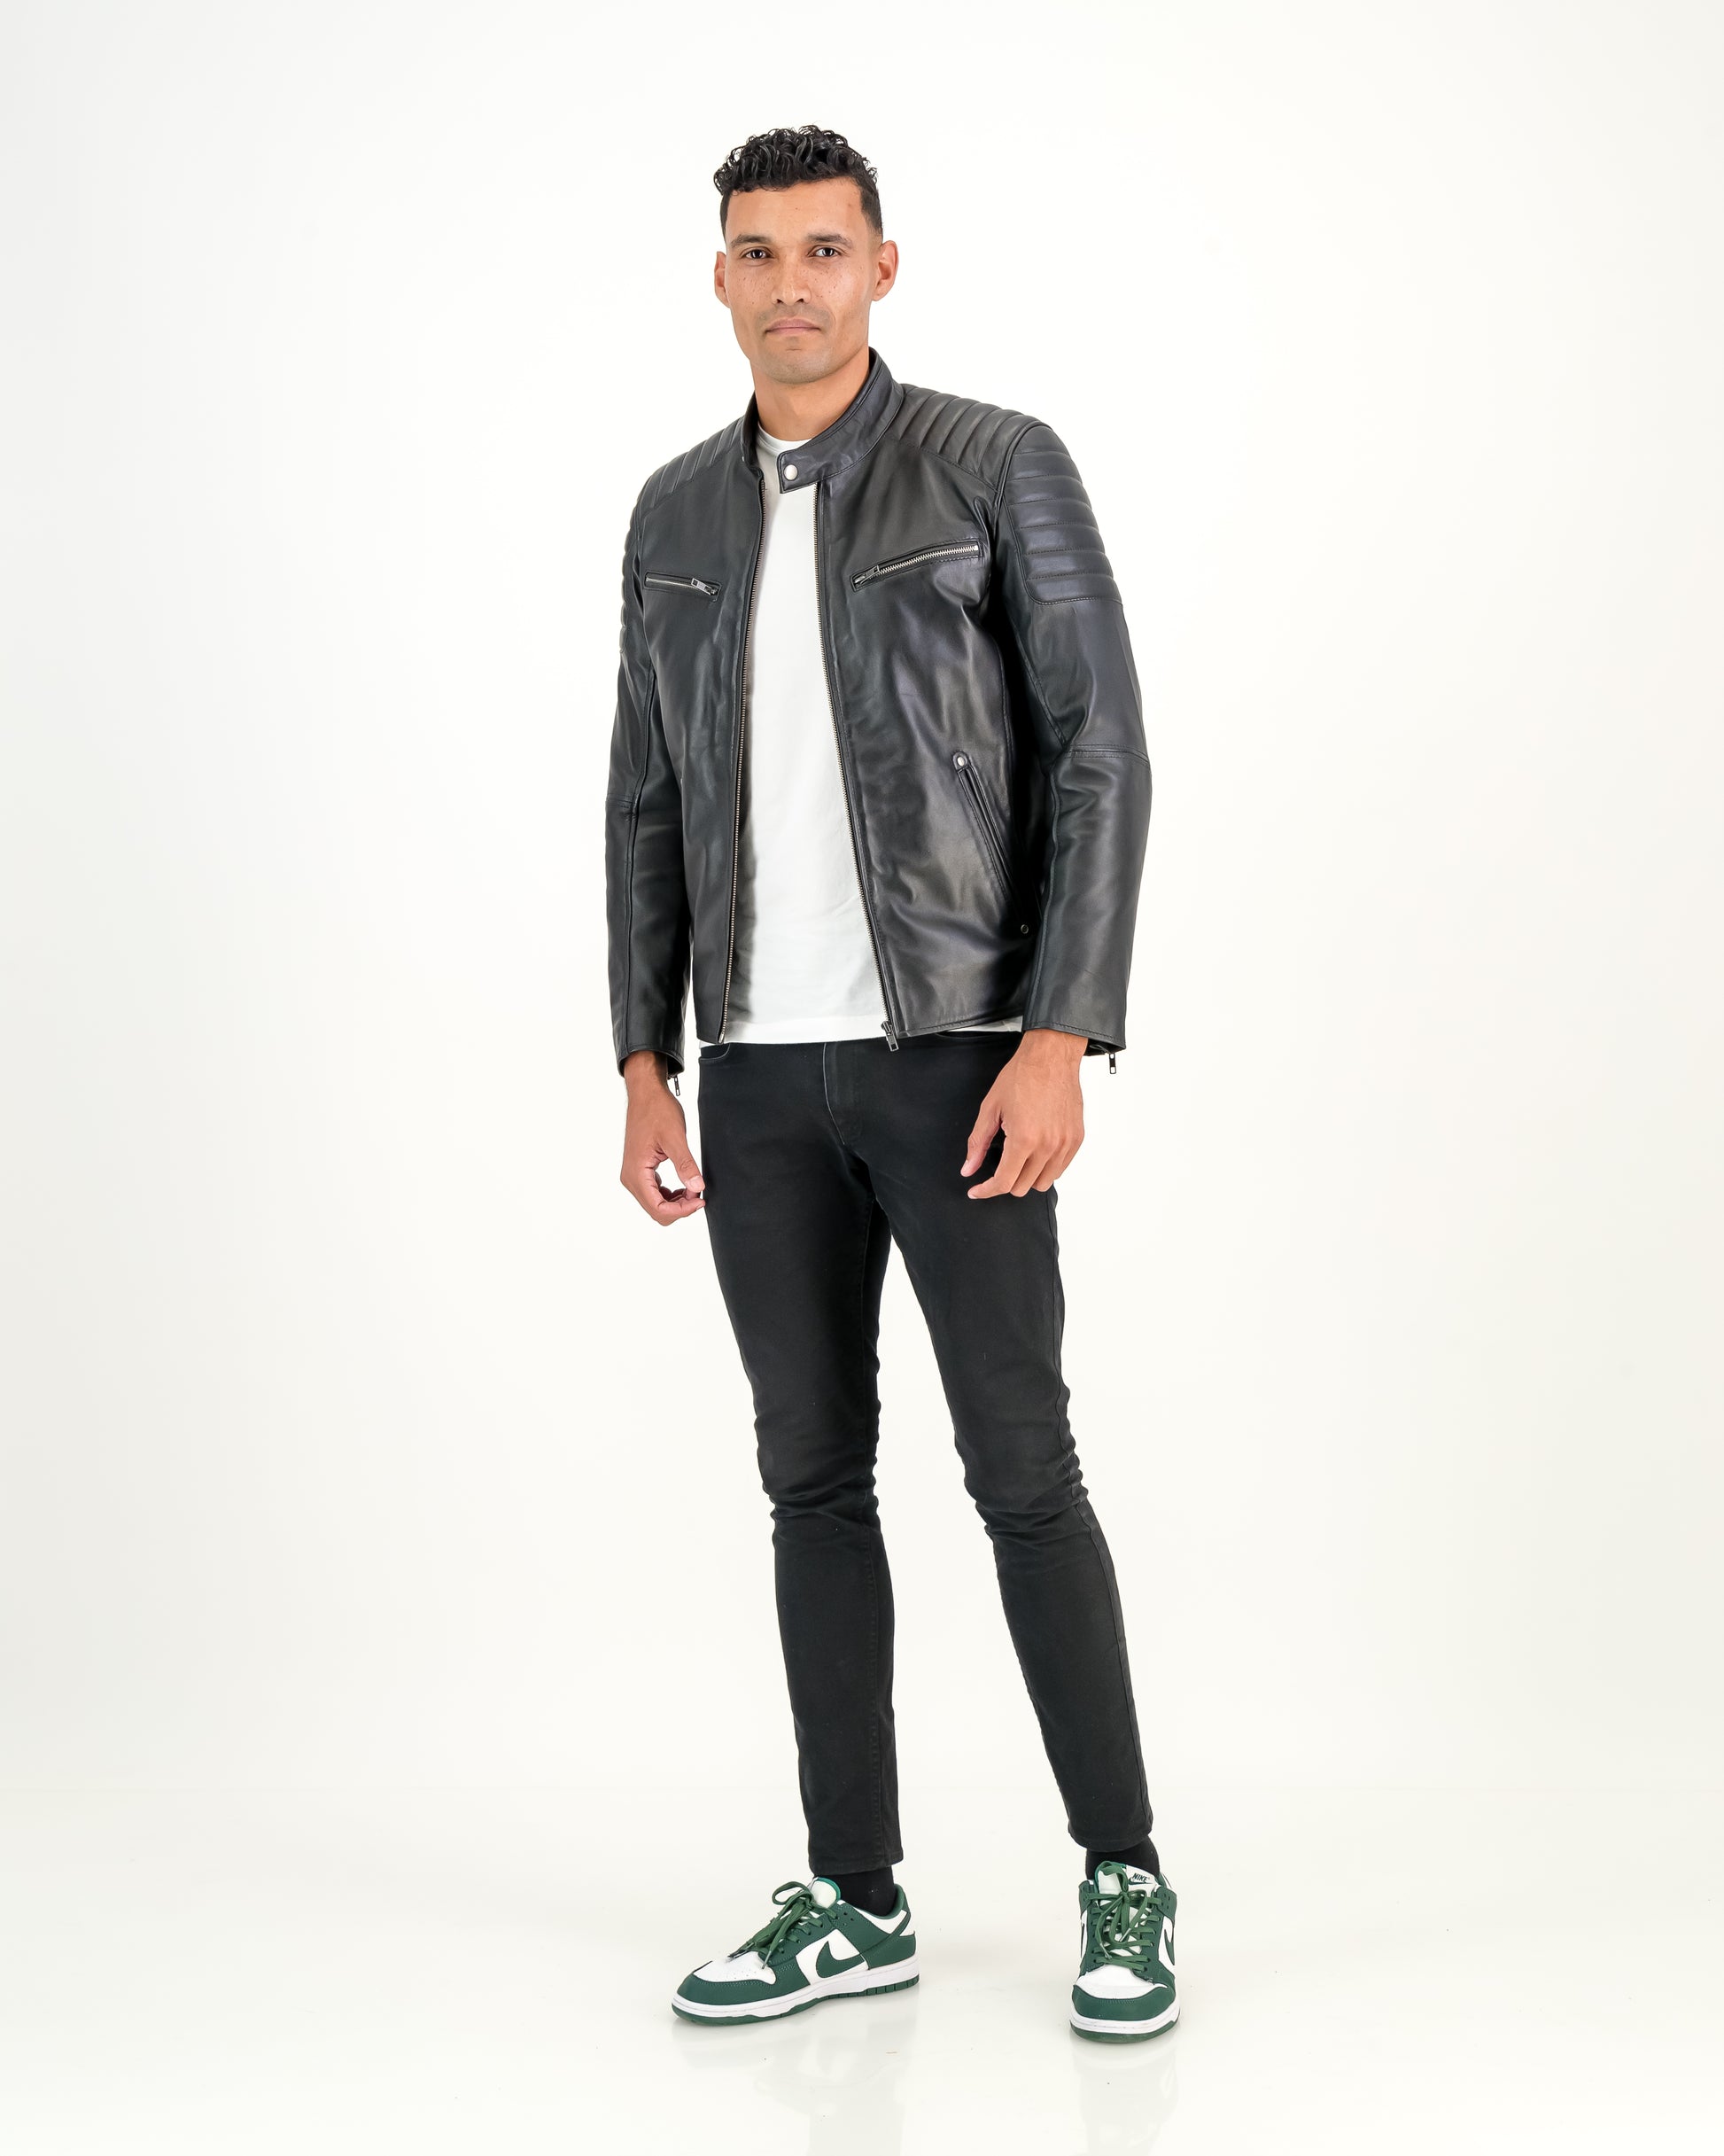 Men's Billy-J Black Leather Jacket- Supreme Leather Supreme Leather